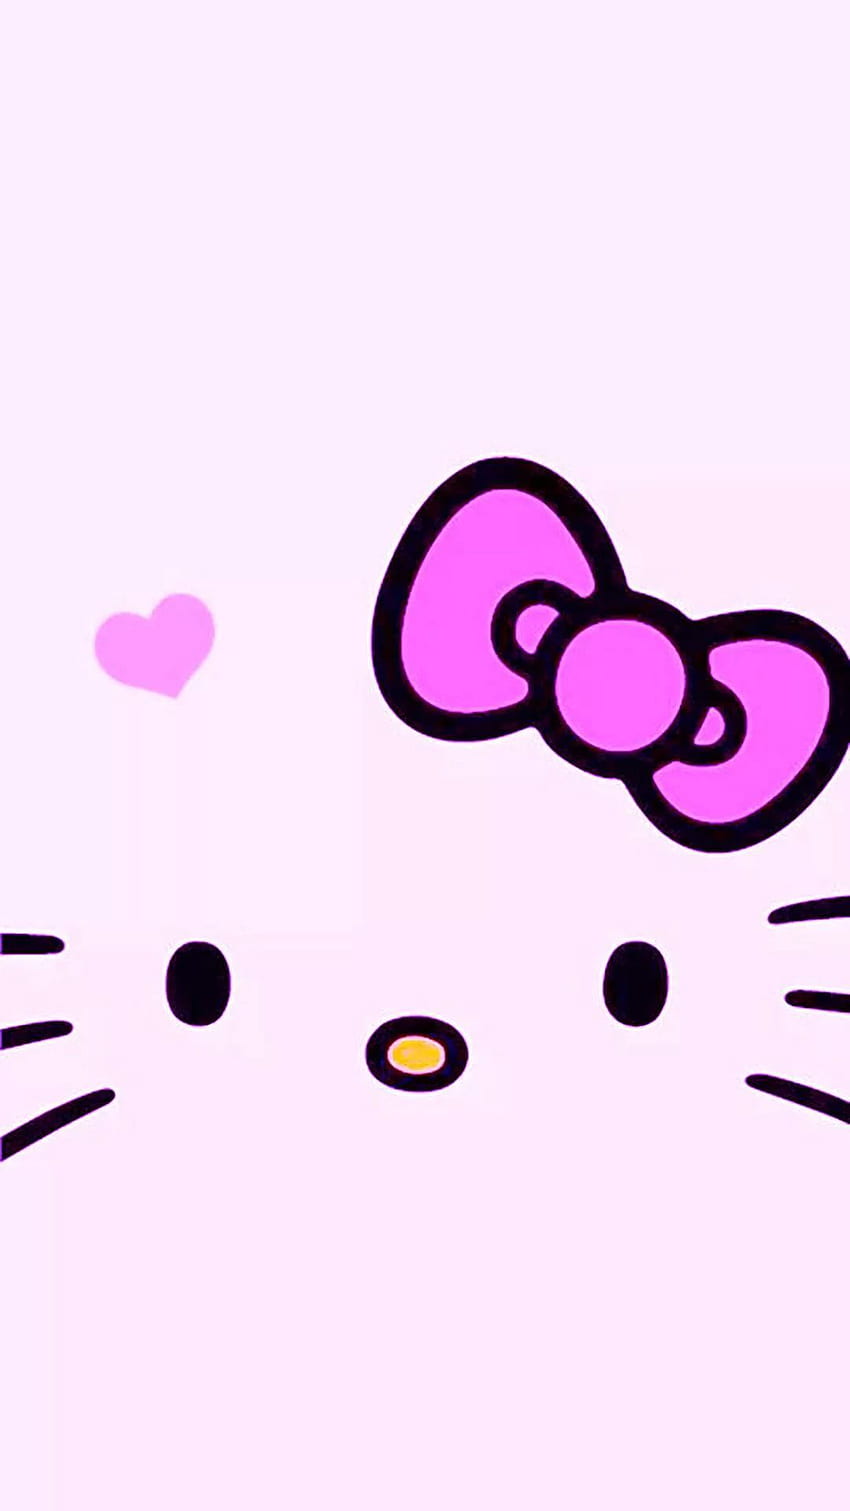 Hình nền iPhone Hello Kitty sẽ khiến chiếc iPhone của bạn nổi bật và đáng yêu hơn. Với vô vàn sự lựa chọn về nhiều kiểu dáng Hello Kitty khác nhau, bạn sẽ có cơ hội lựa chọn một phong cách riêng biệt cho thiết bị của mình.